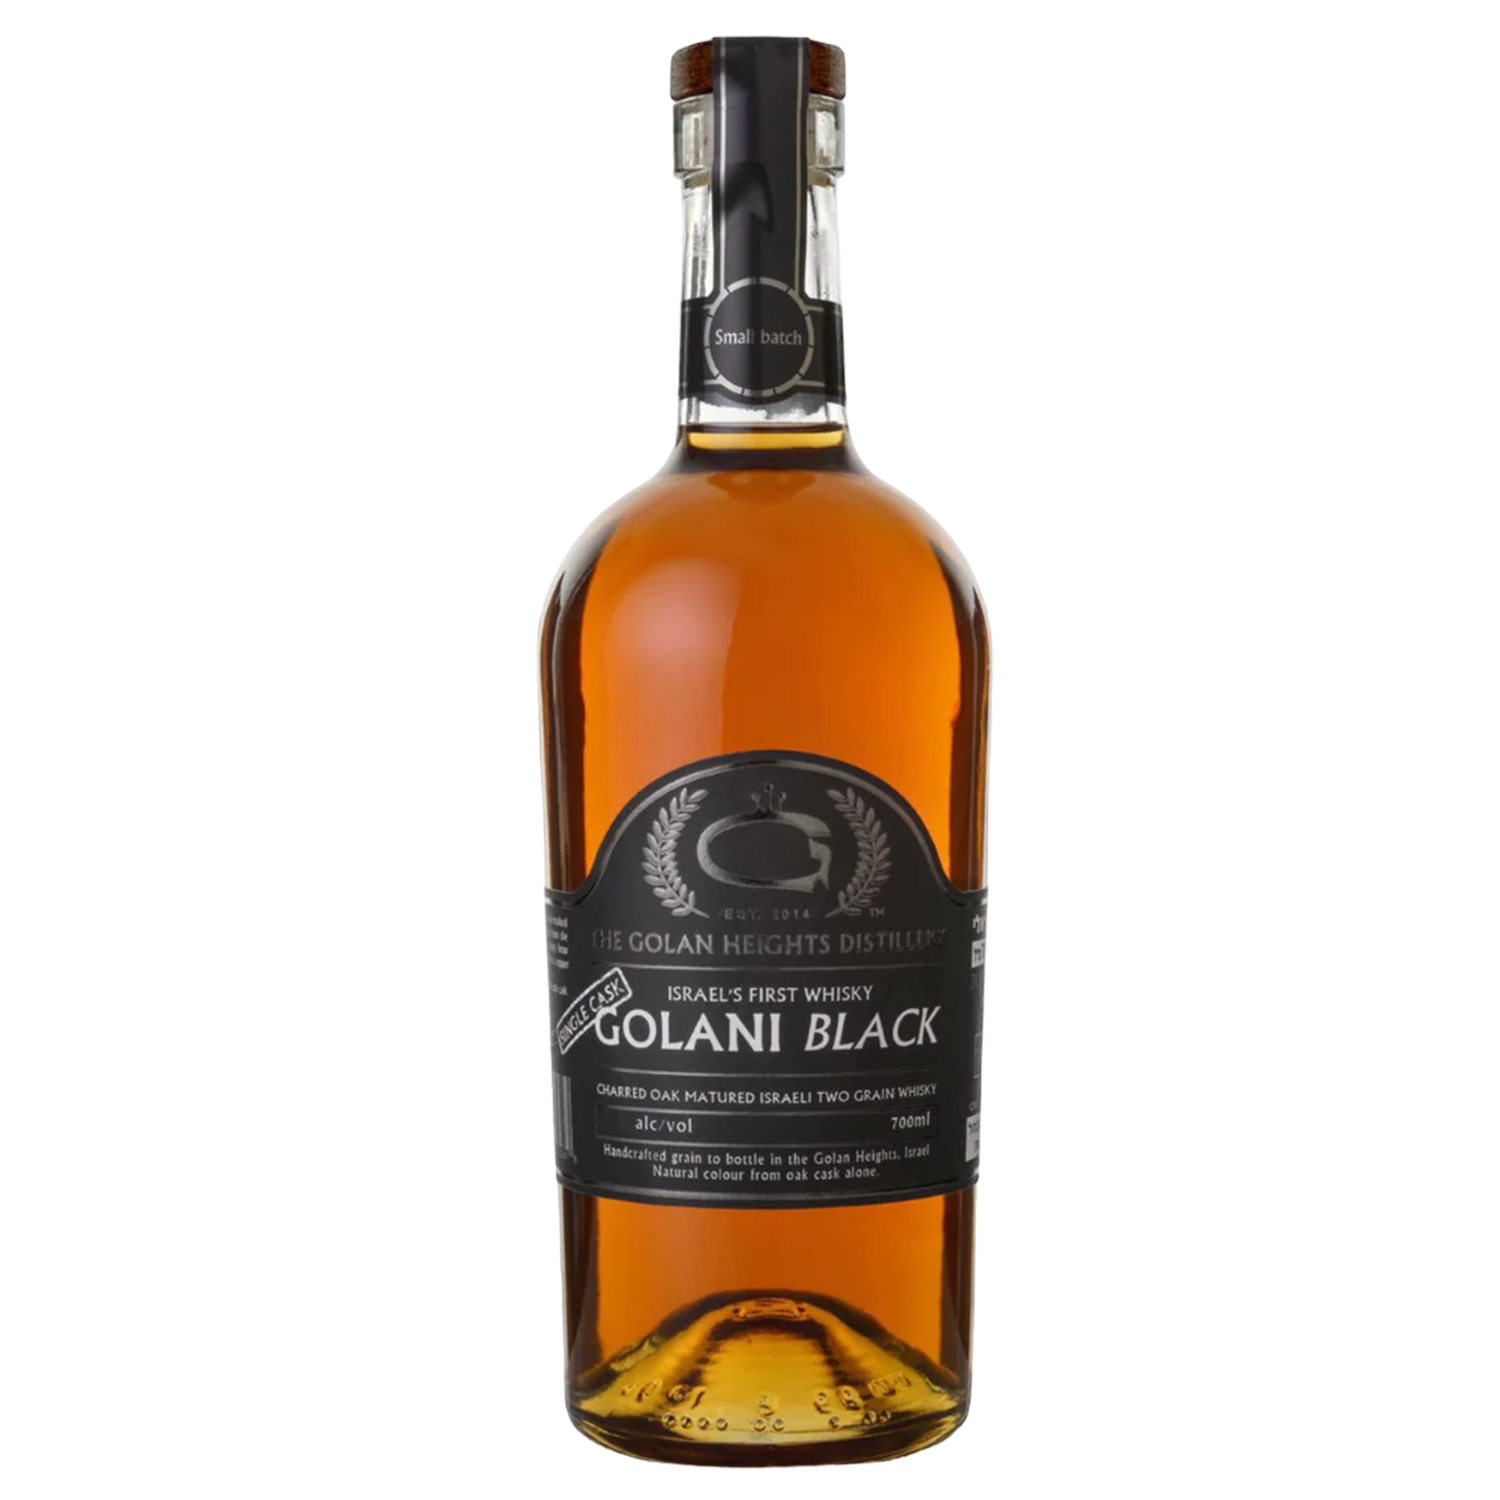 Golani Black Single Grain Whisky Cask Strength